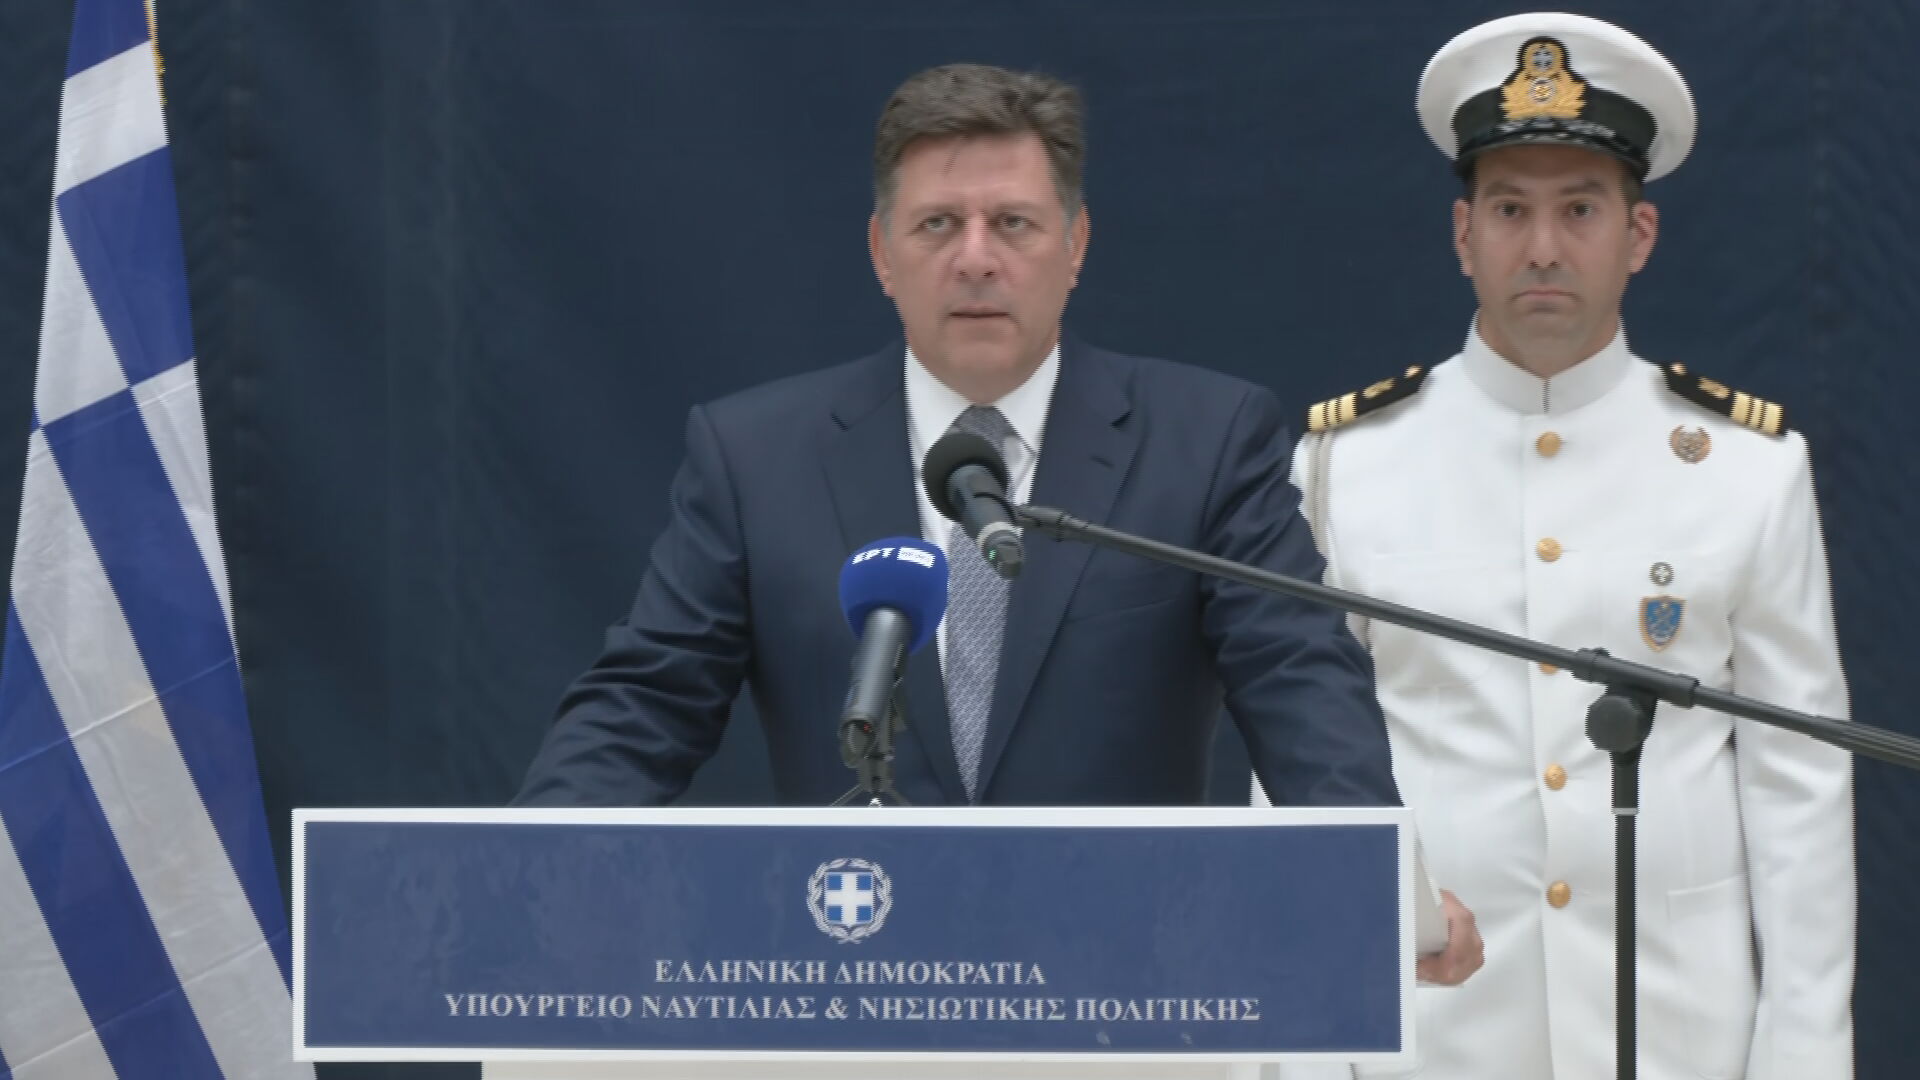 Τελετή παράδοσης – παραλαβής στο Υπ. Ναυτιλίας – Μ. Βαρβιτσιώτης: Να διευκολύνουμε όσο μπορούμε την ελληνική ναυτιλία, να στηρίξουμε τον Έλληνα ναυτικό